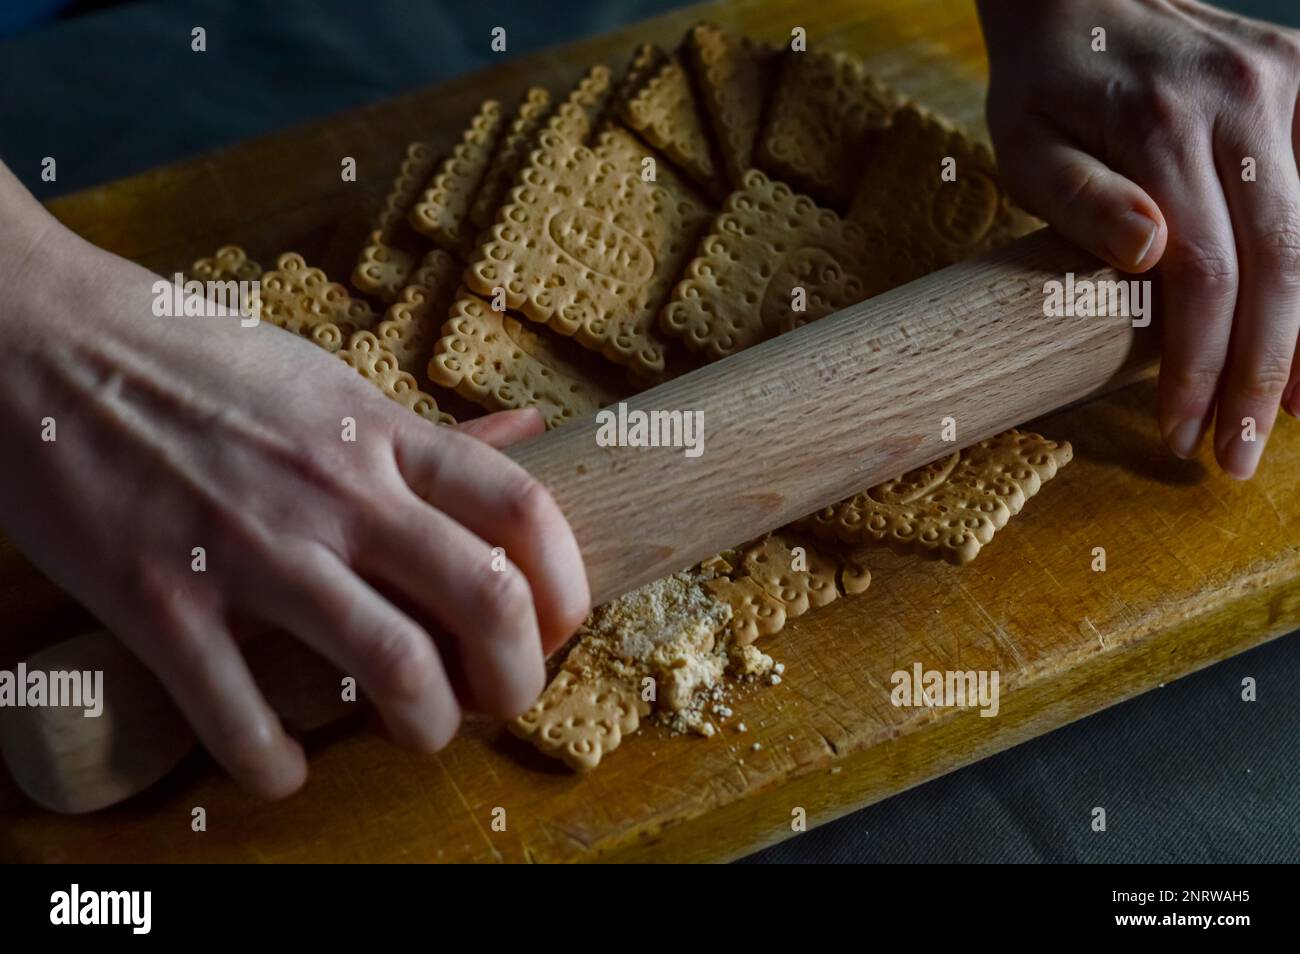 Hände, die Kekse mit einer Walznadel zerbrechen, um die knusprige Basis eines Käsekuchen zuzubereiten Stockfoto